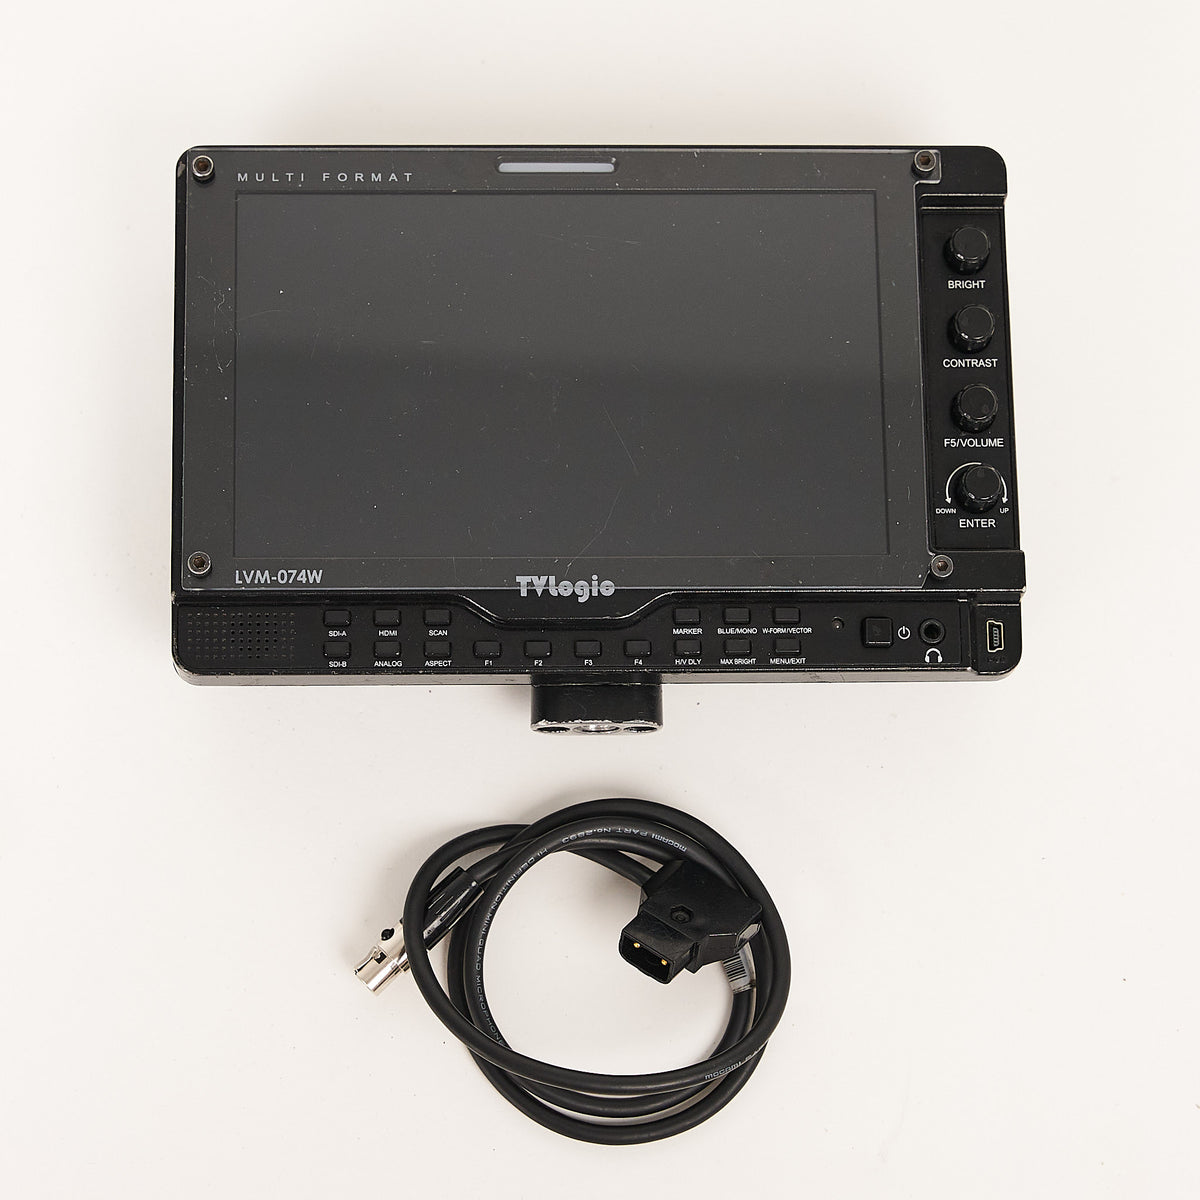 ACC3443-L0888 TV Logic LVM-074W 7” HD LCD Monitor000127.jpg